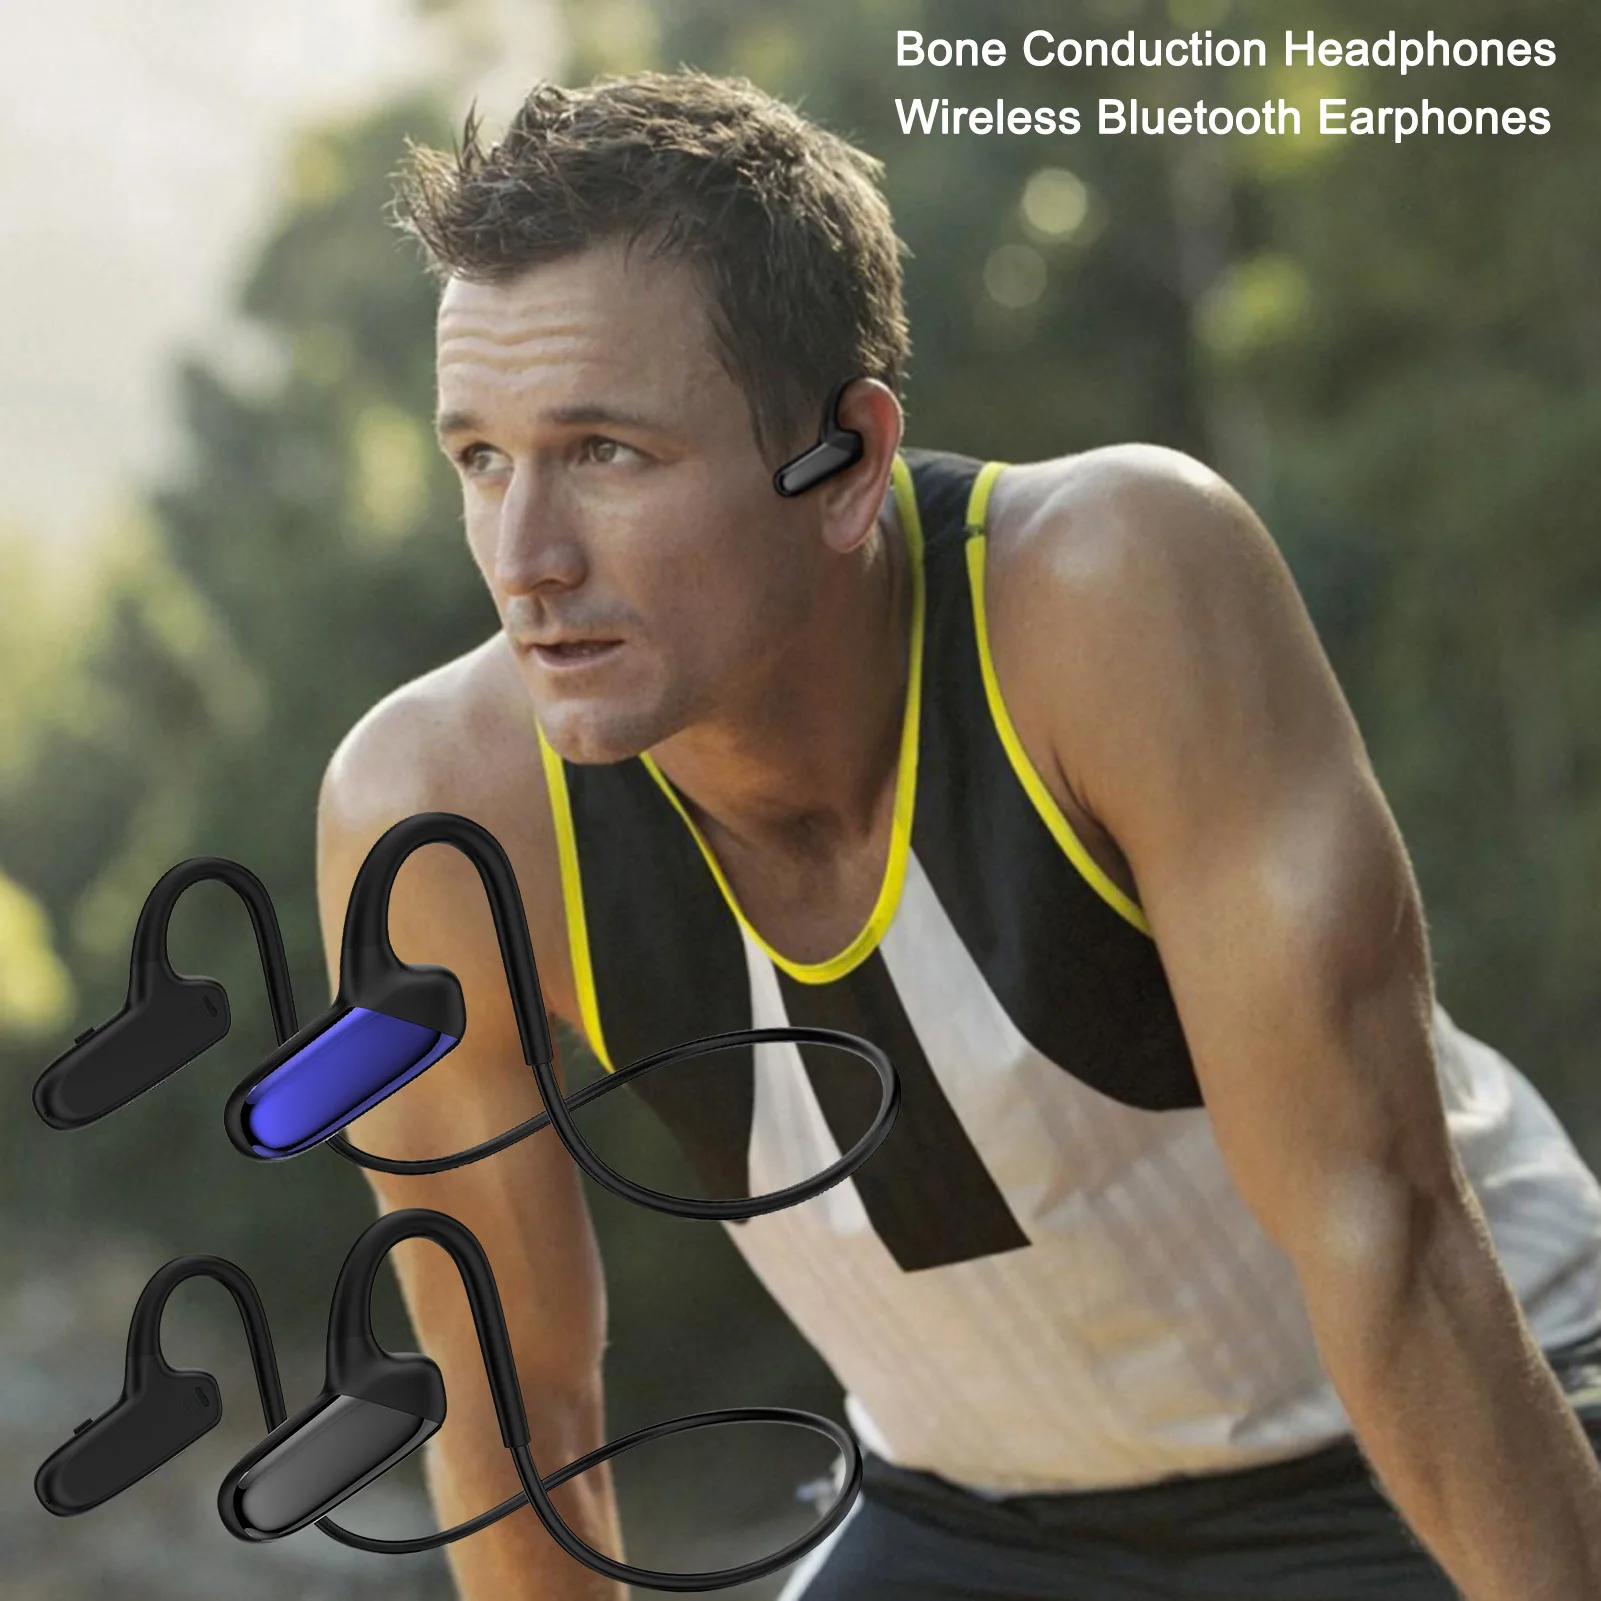 

F808 Mini Bone Conduction Bluetooth 5.0 Headphone Wireless Open-ear Sports Earphone Waterproof IPX5 Sport Headsets With Mic